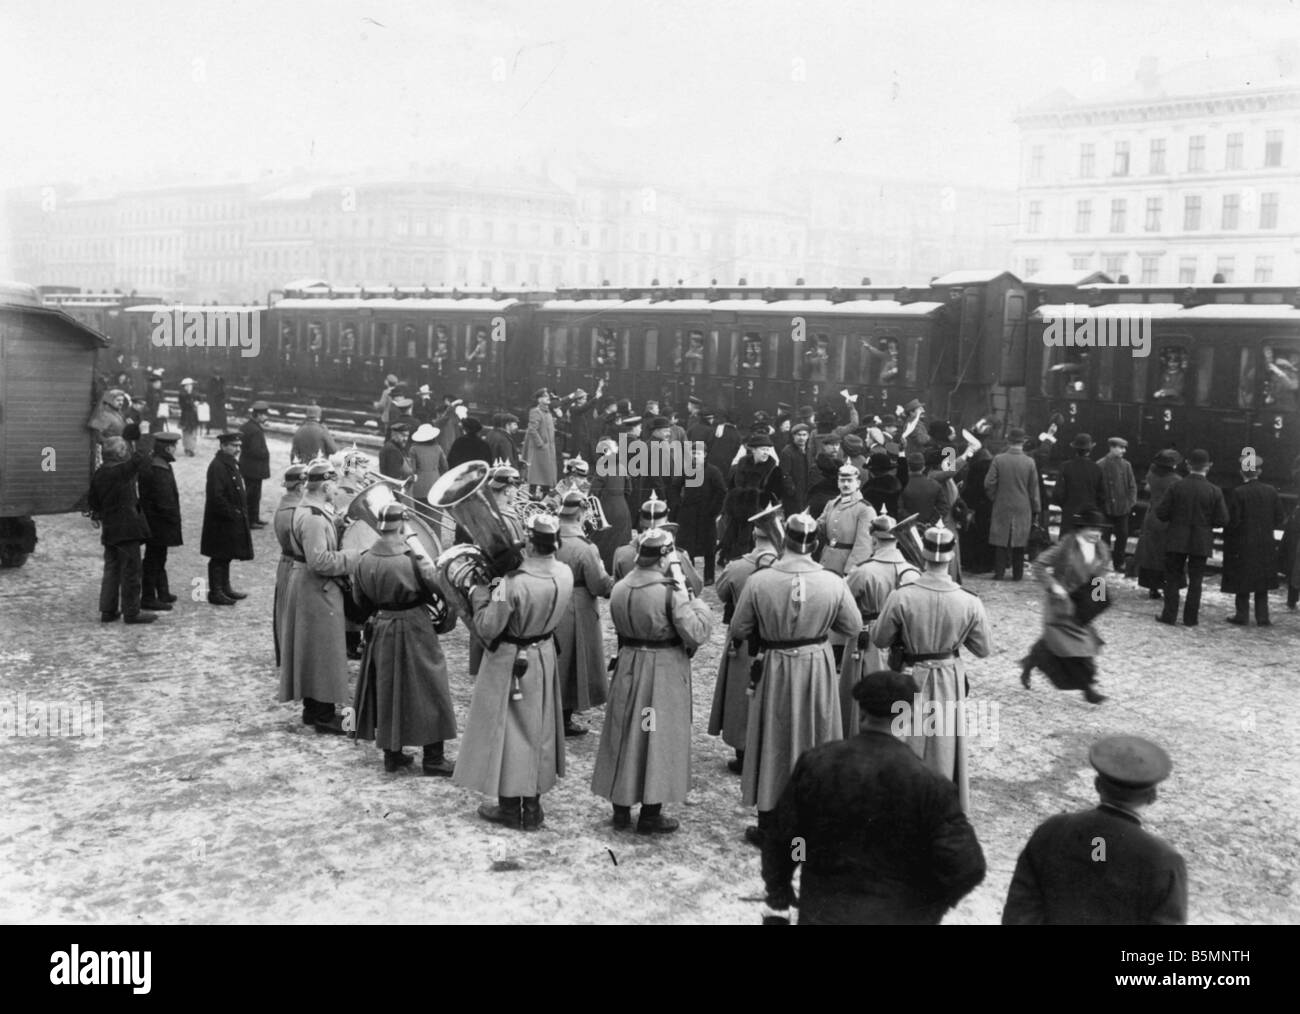 8 1914 0 0 A4 2 Troop Transport Militärkapelle WWI Truppentransporter bei einem Berlin-Train station eine Militärkapelle spielt bei der nunmehr Stockfoto